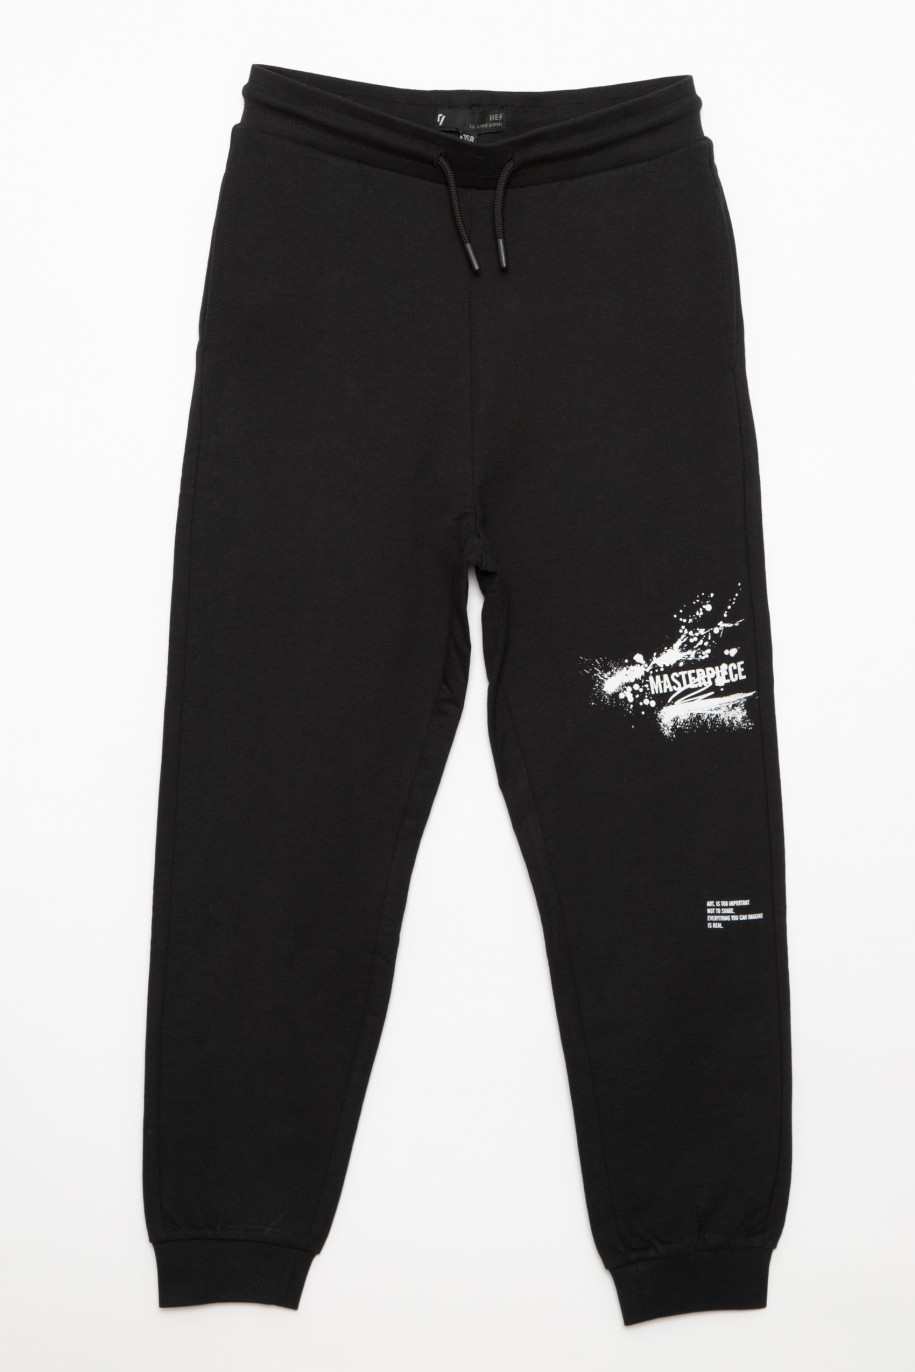 Czarne spodnie dresowe z nadrukami dla chłopaka ARTIST - 32476